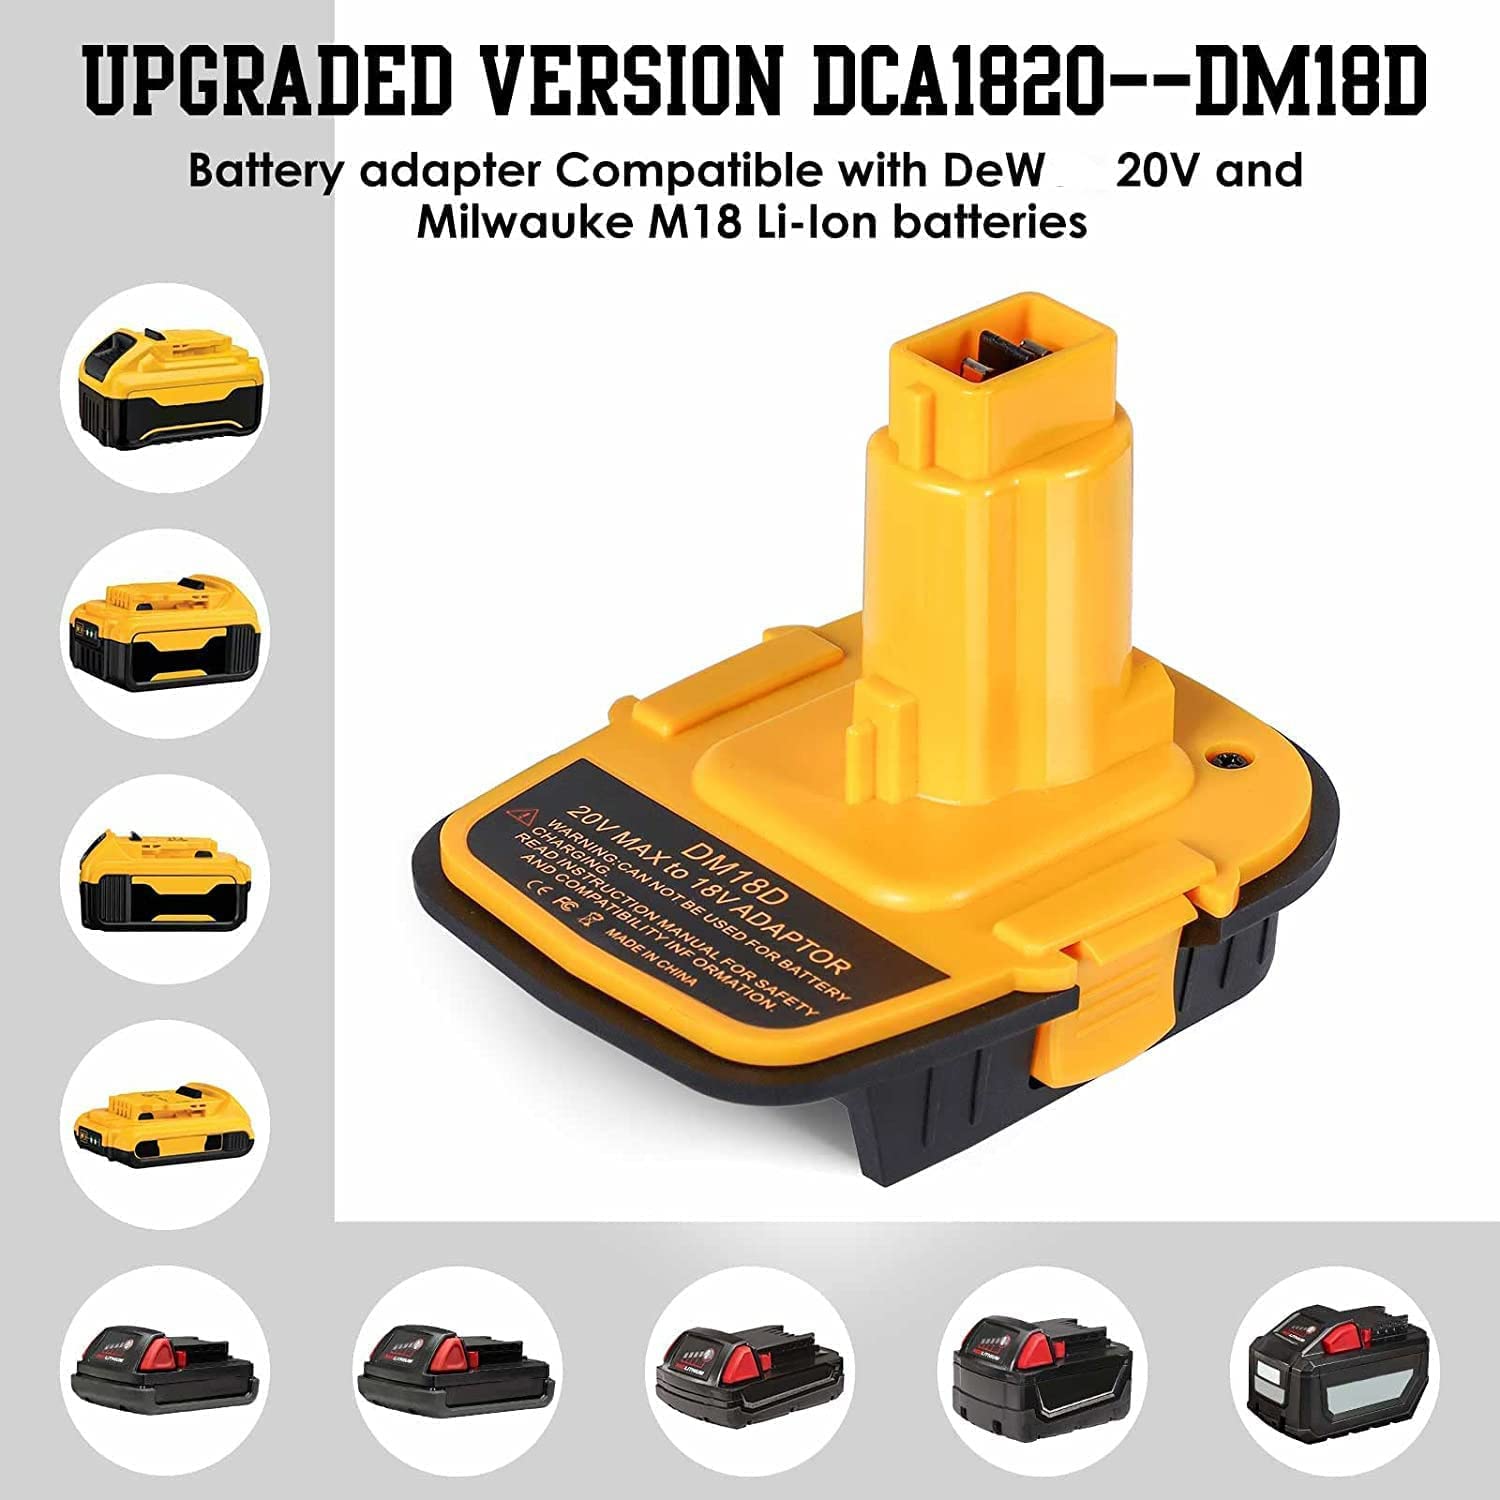 ბატარეის ადაპტერი DM18D USB პორტით